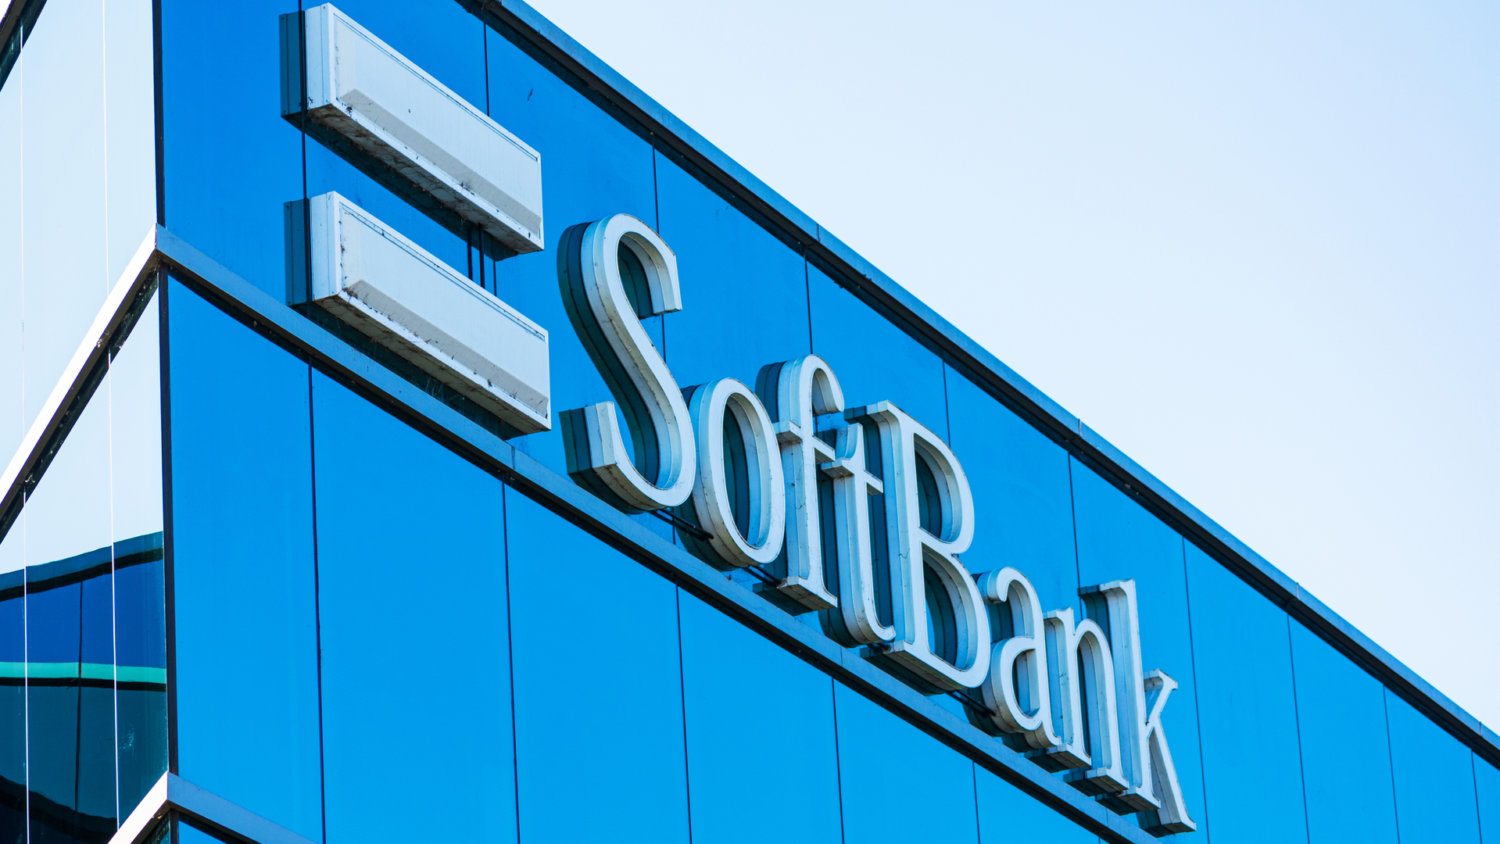 SoftbankBuilding